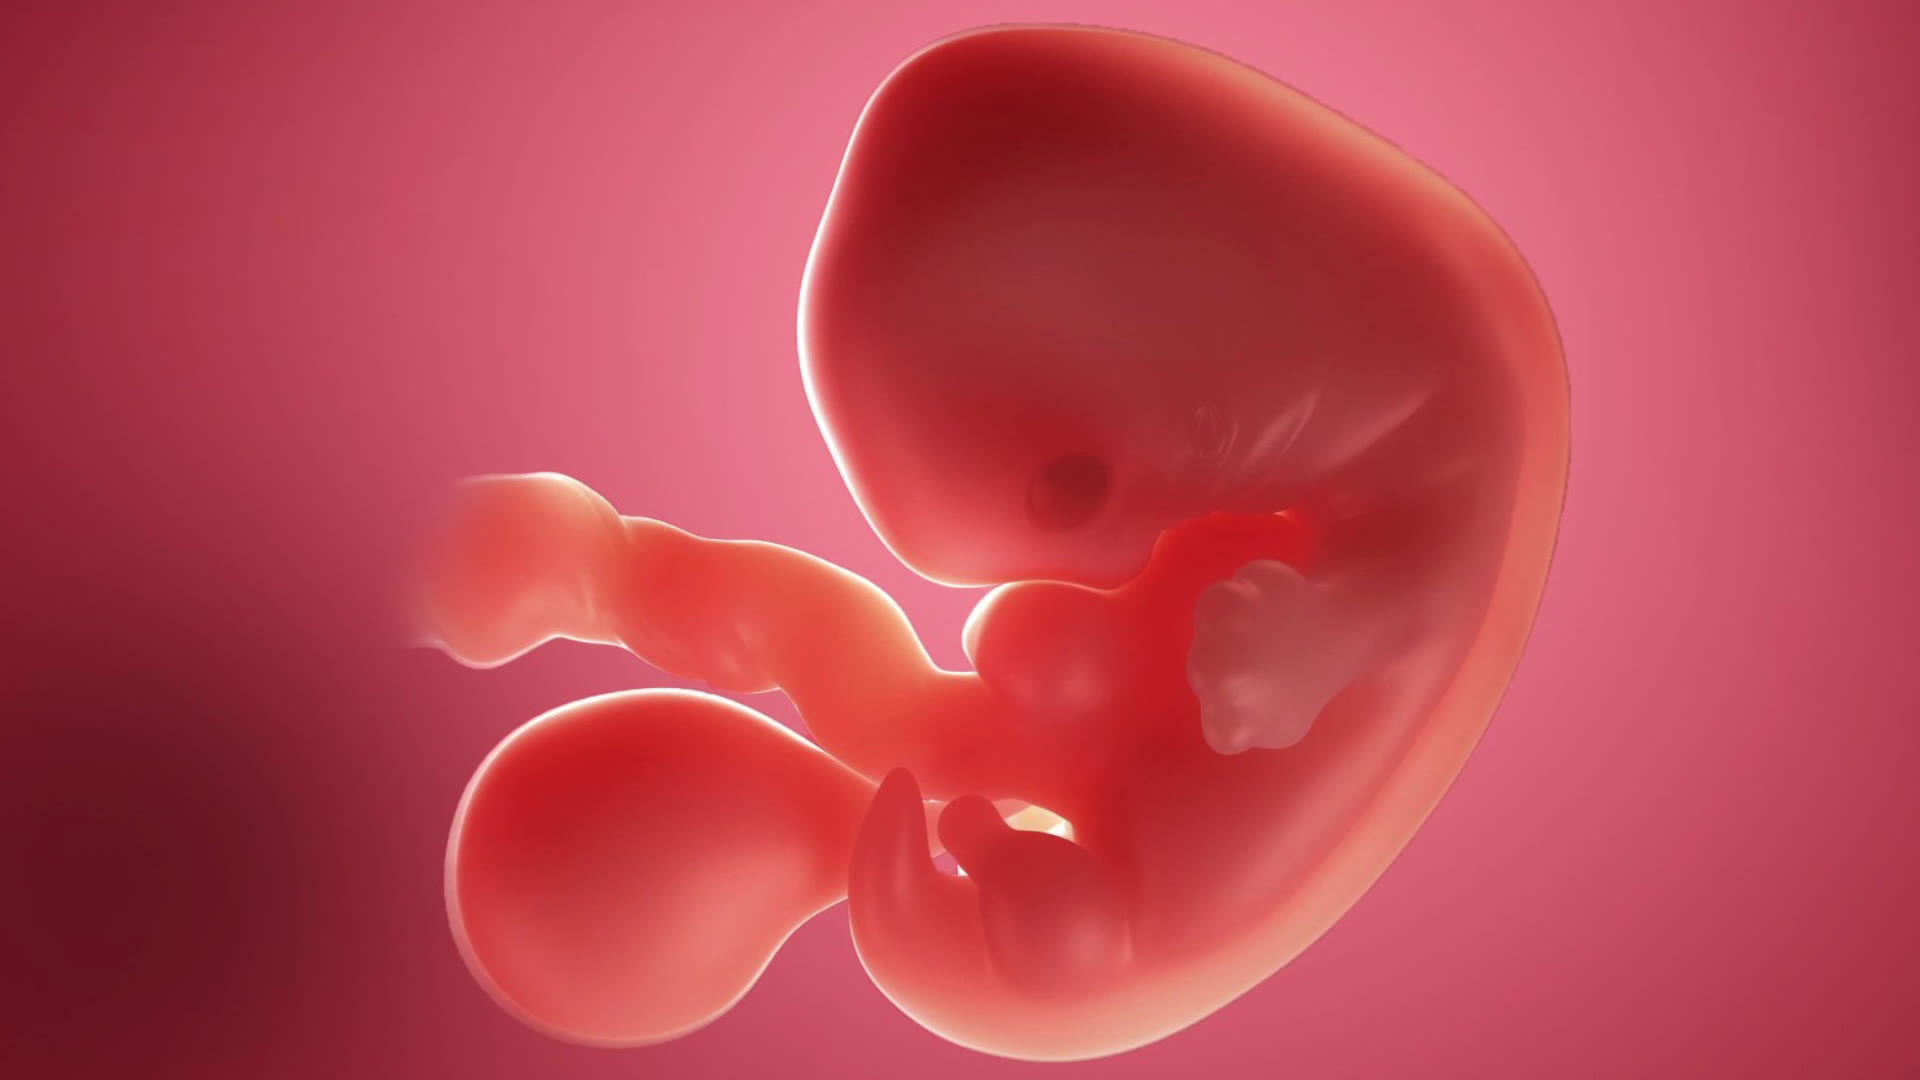 Sexta semana de embarazo: el corazón comienza a latir